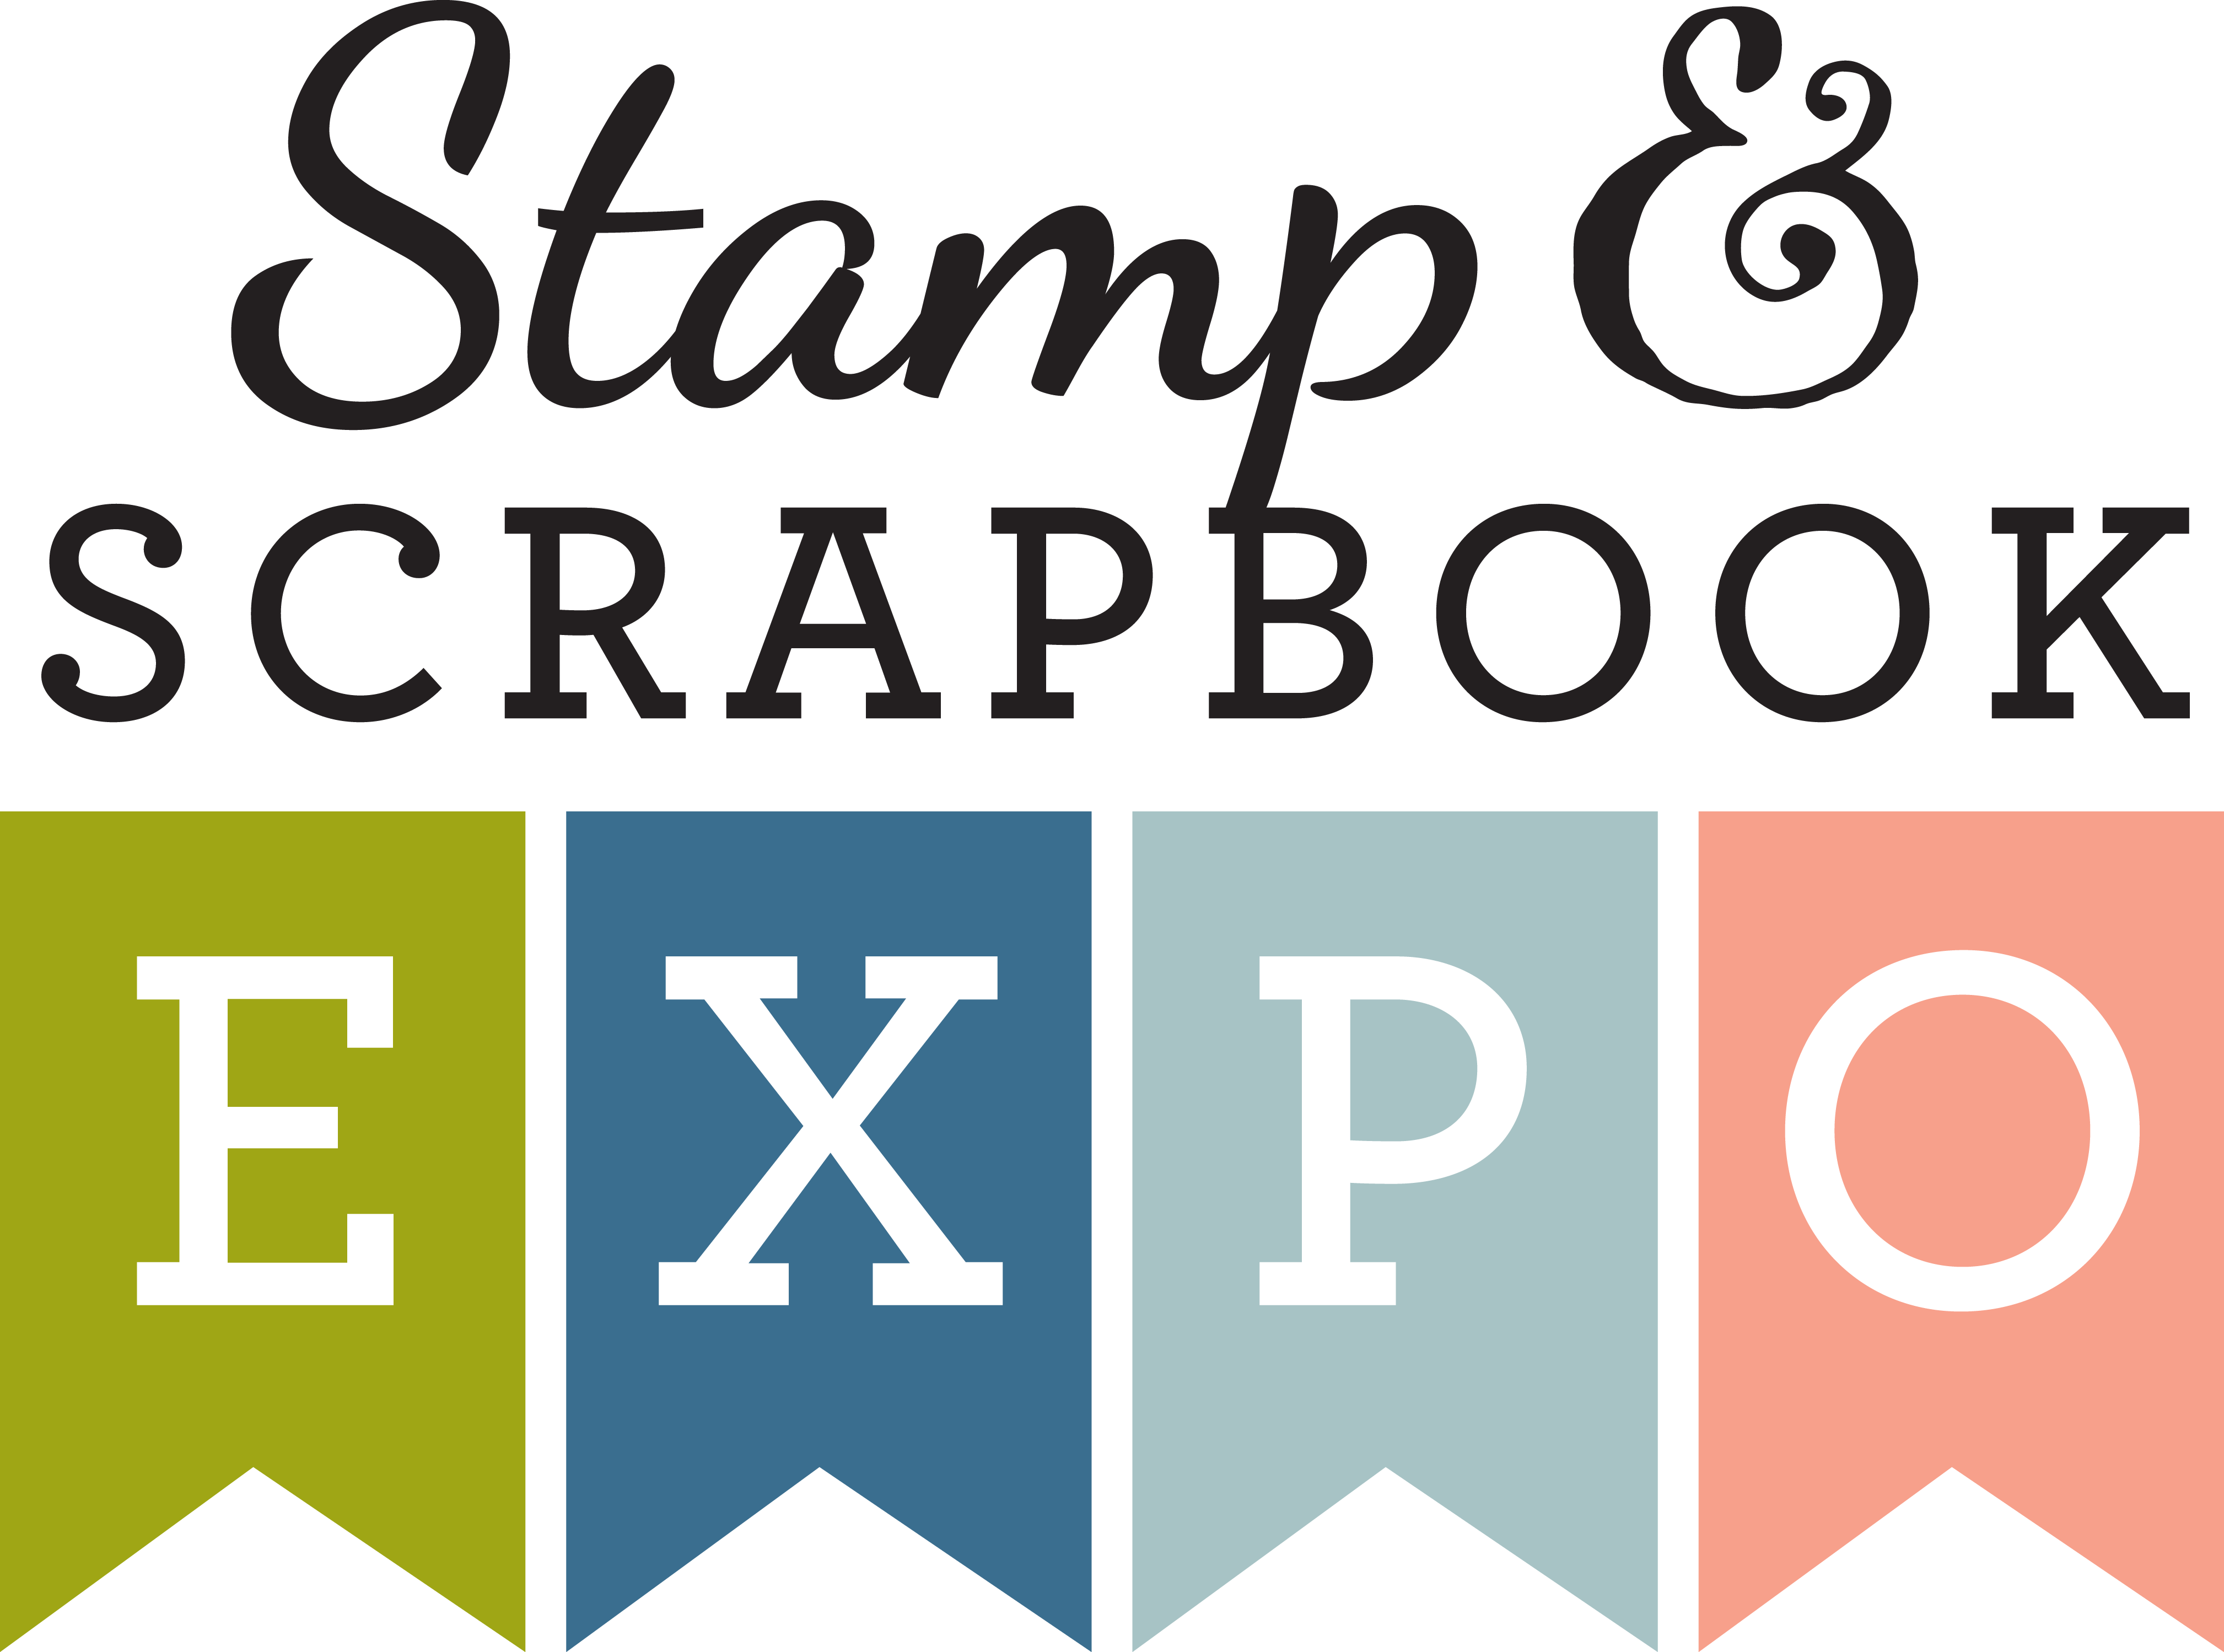 Stamp & Scrapbook Expo